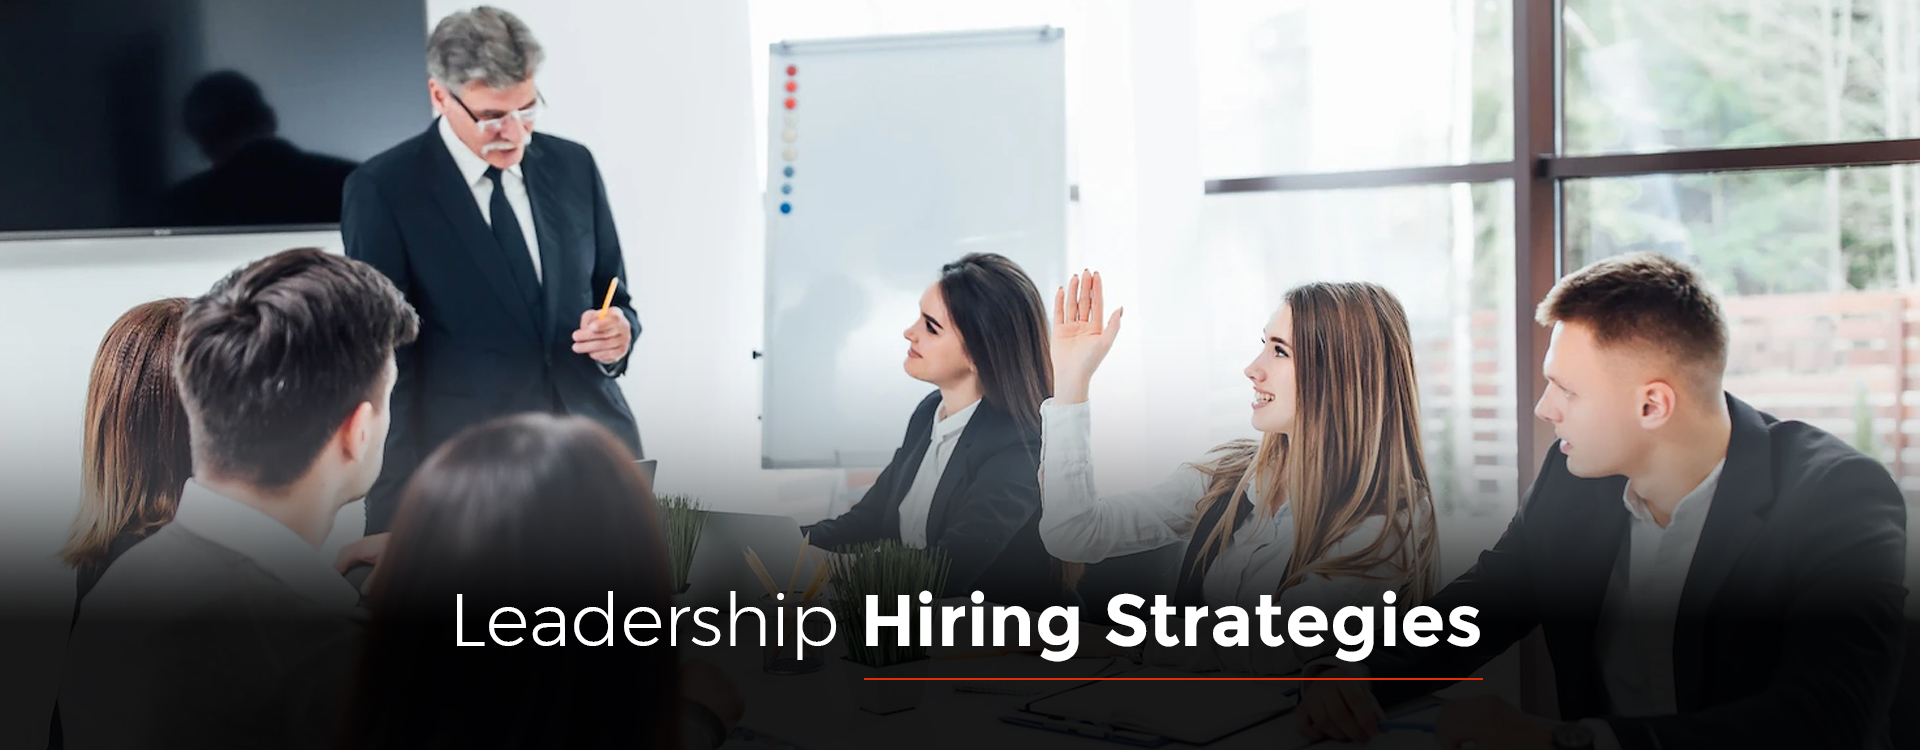 Leadership Hiring Strategies